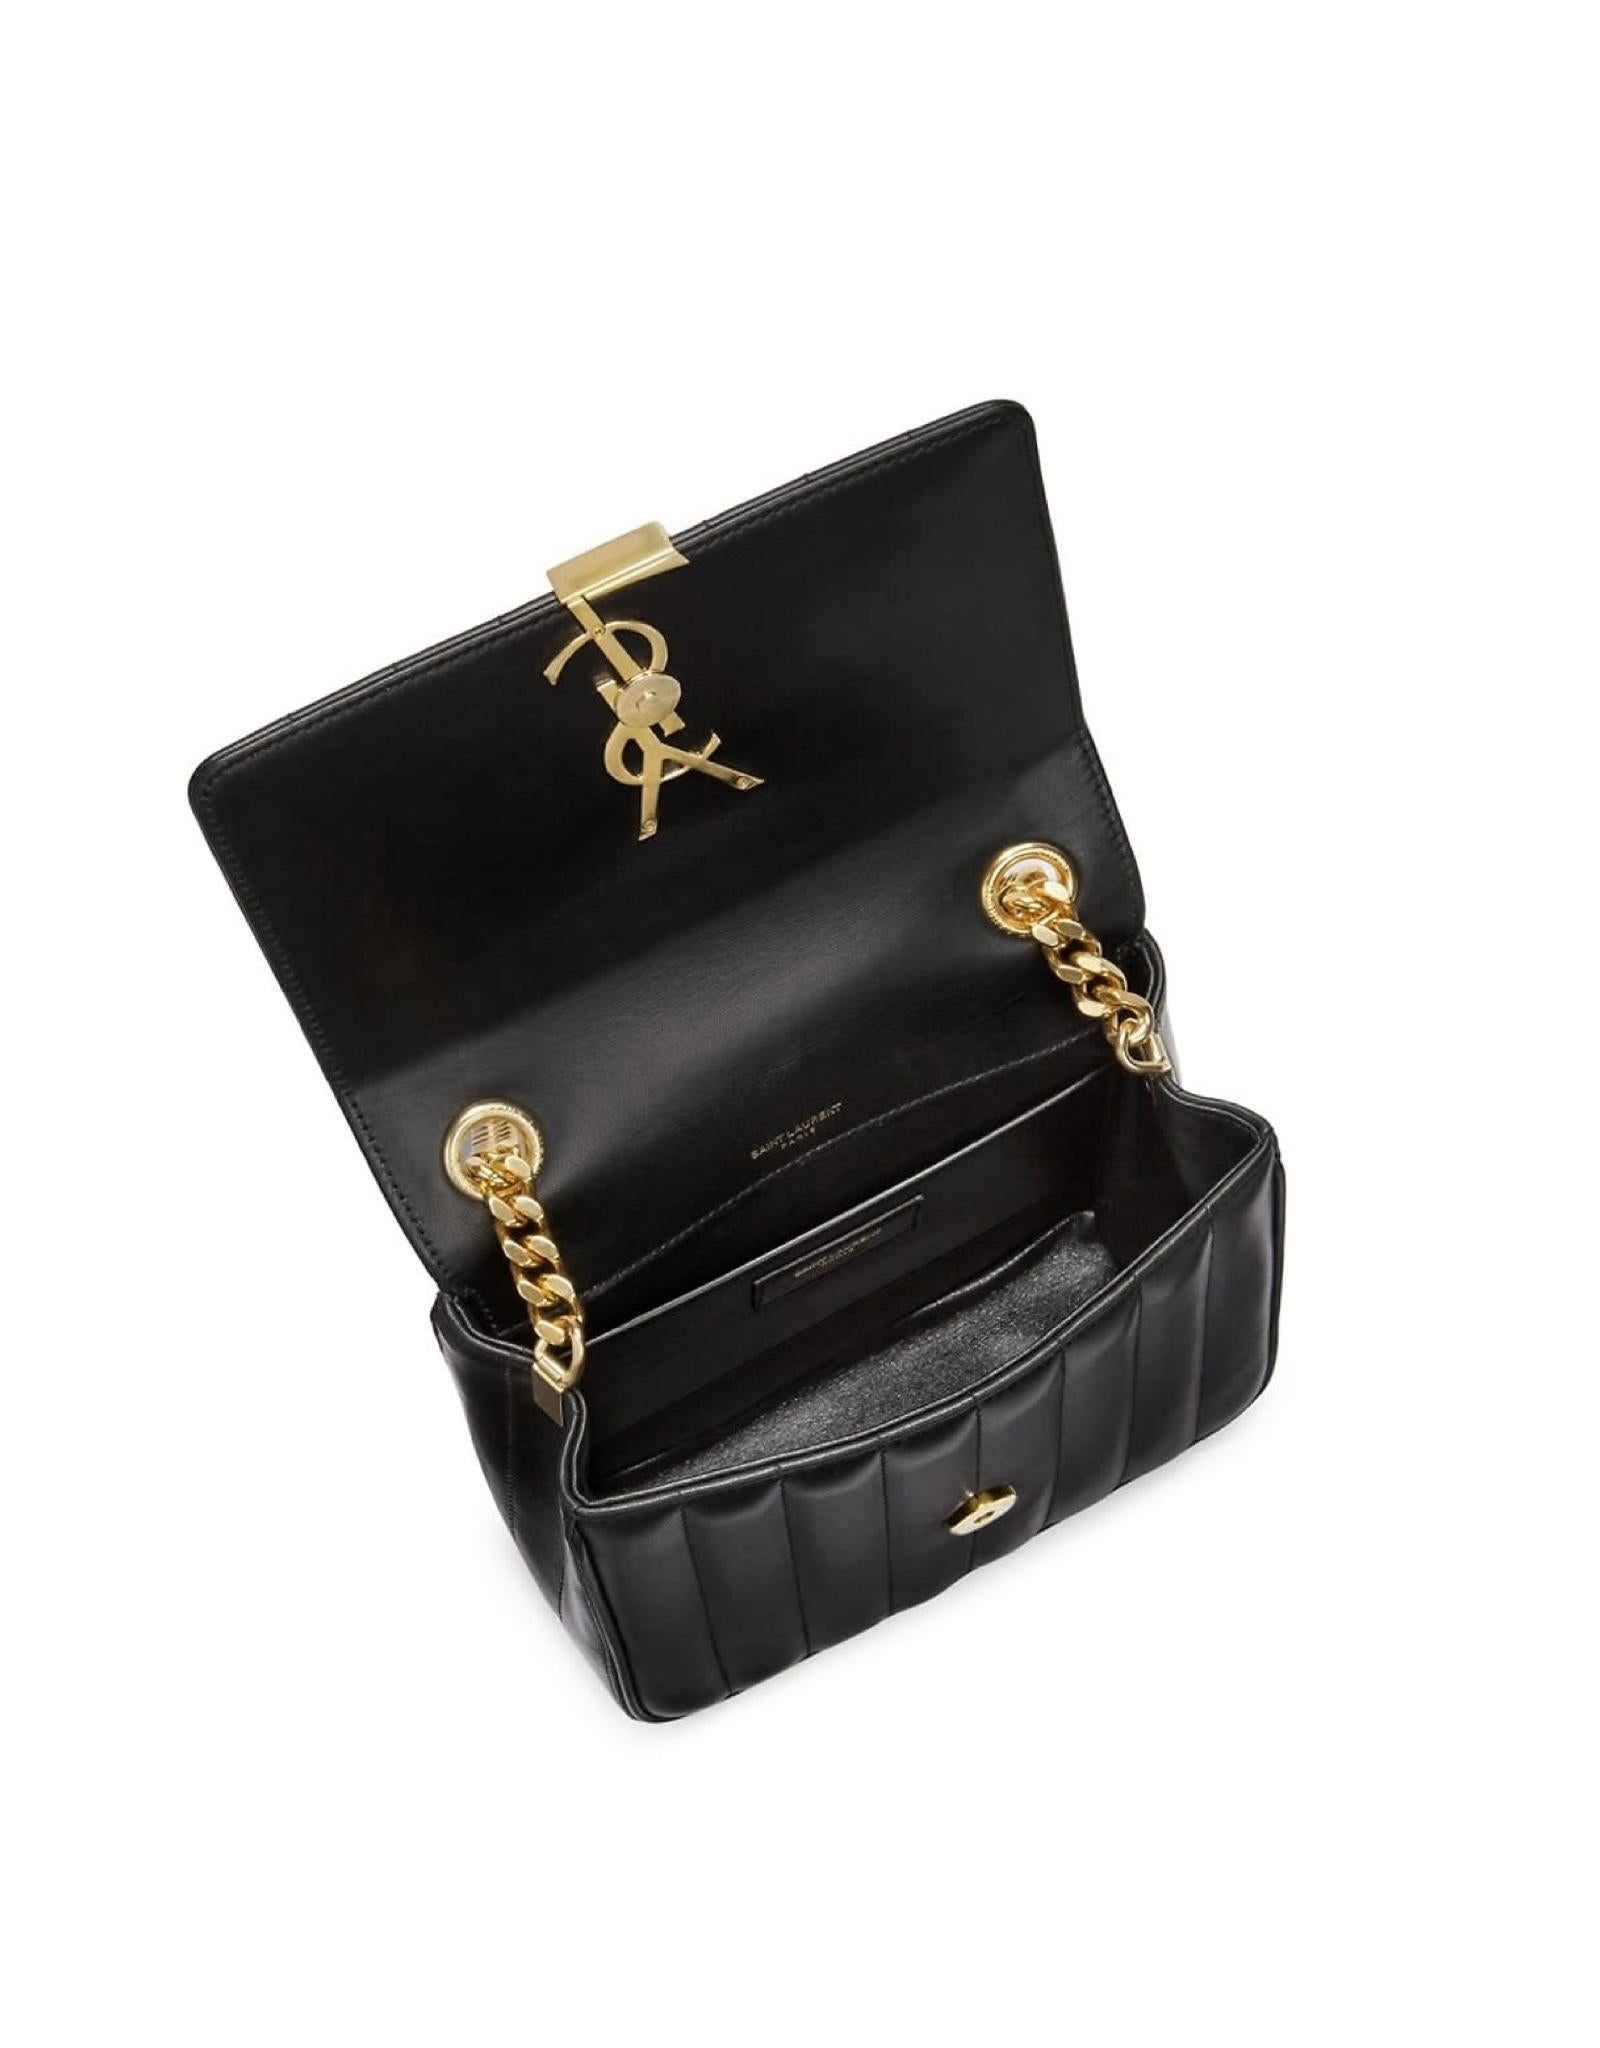 Diese Saint Laurent Tasche ist aus schwarzem Leder mit Matelassé-Nähten gefertigt und verfügt über das ikonische goldfarbene Logo, eine Klappe mit Druckknopfverschluss, goldfarbene Hardware, ein Innenfach und ein Stofffutter.

FARBE: